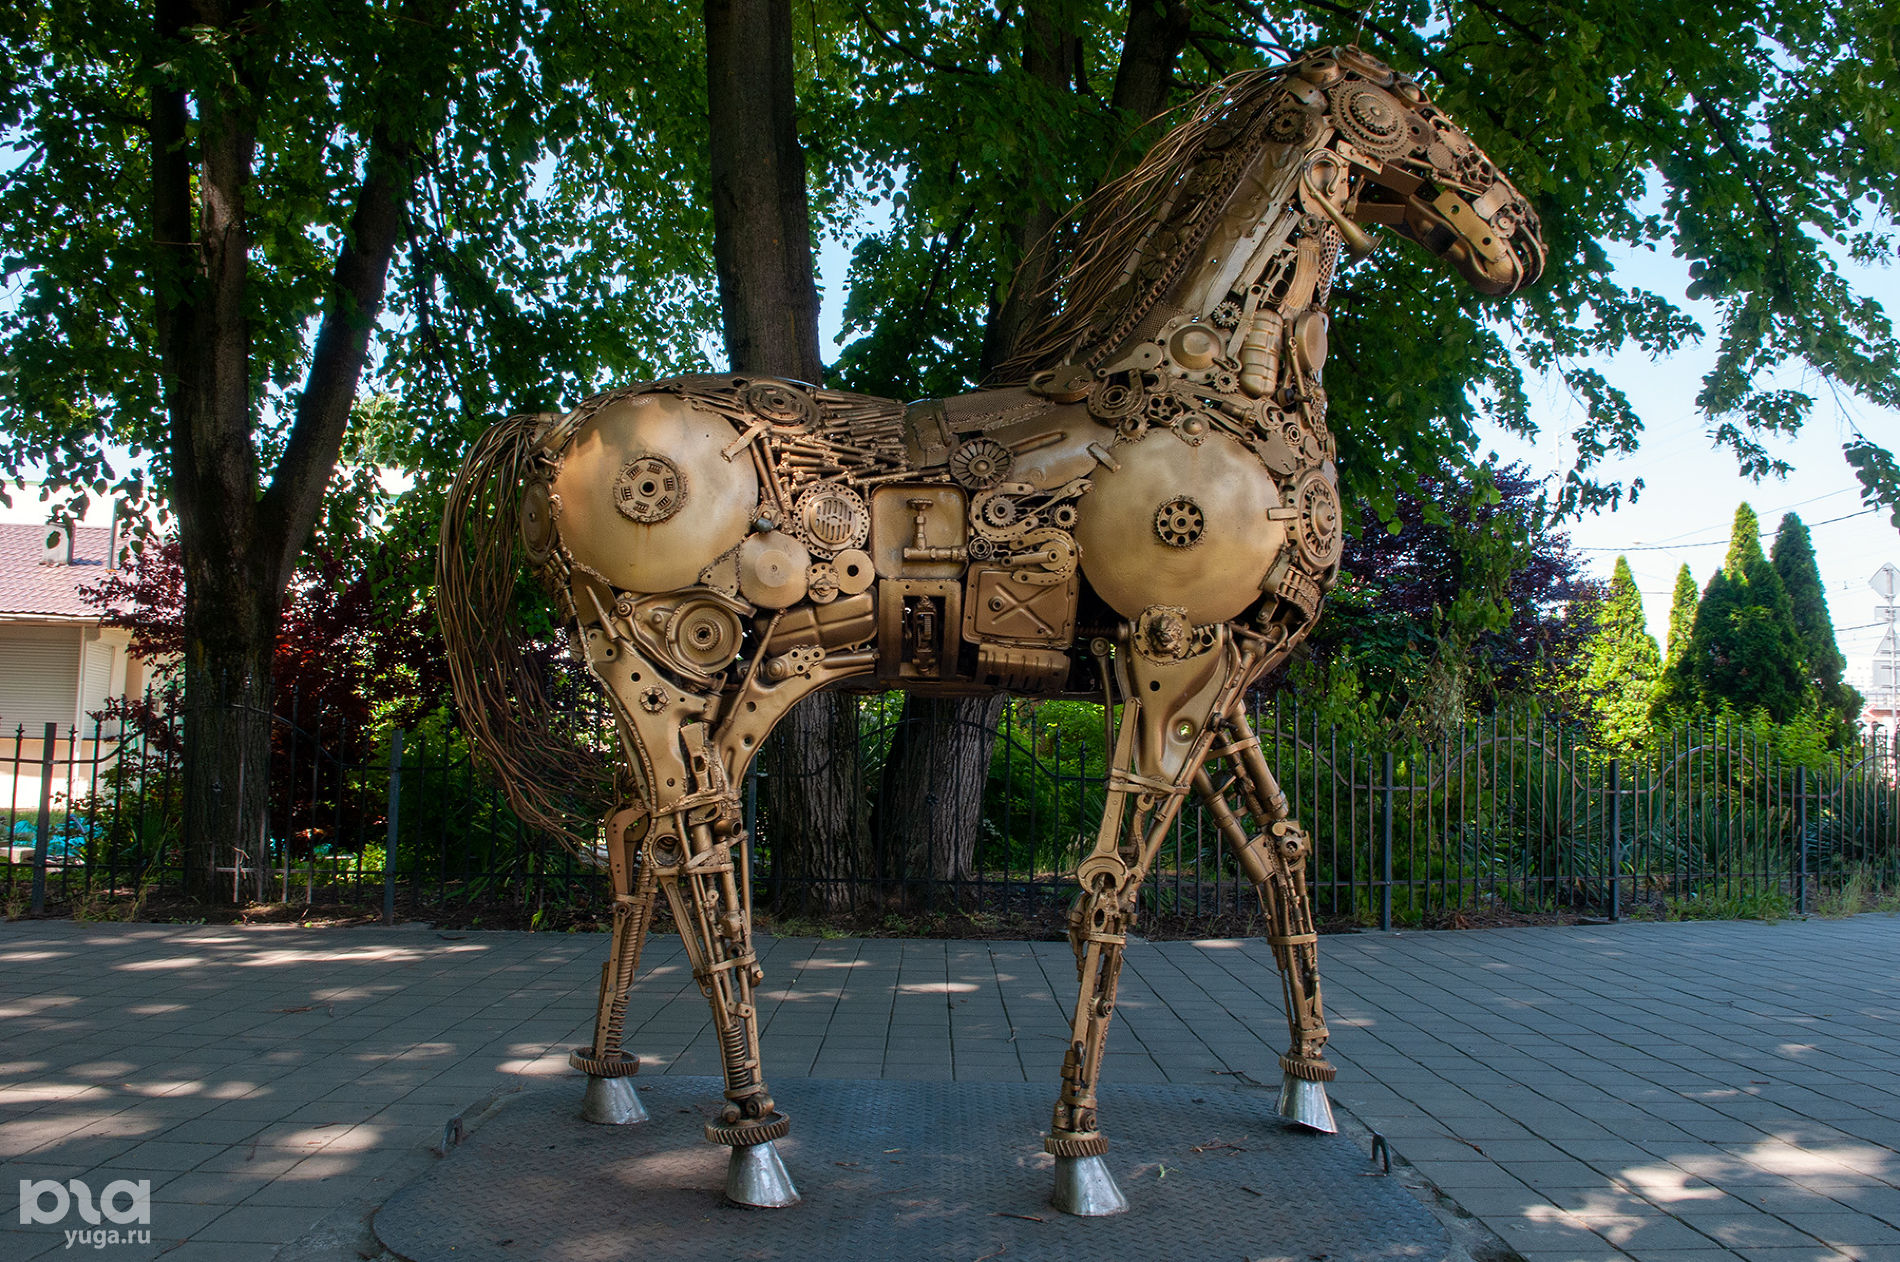 Скульптура «Механическая кобыла» в Молодежном сквере © Фото Дмитрия Пославского, Юга.ру